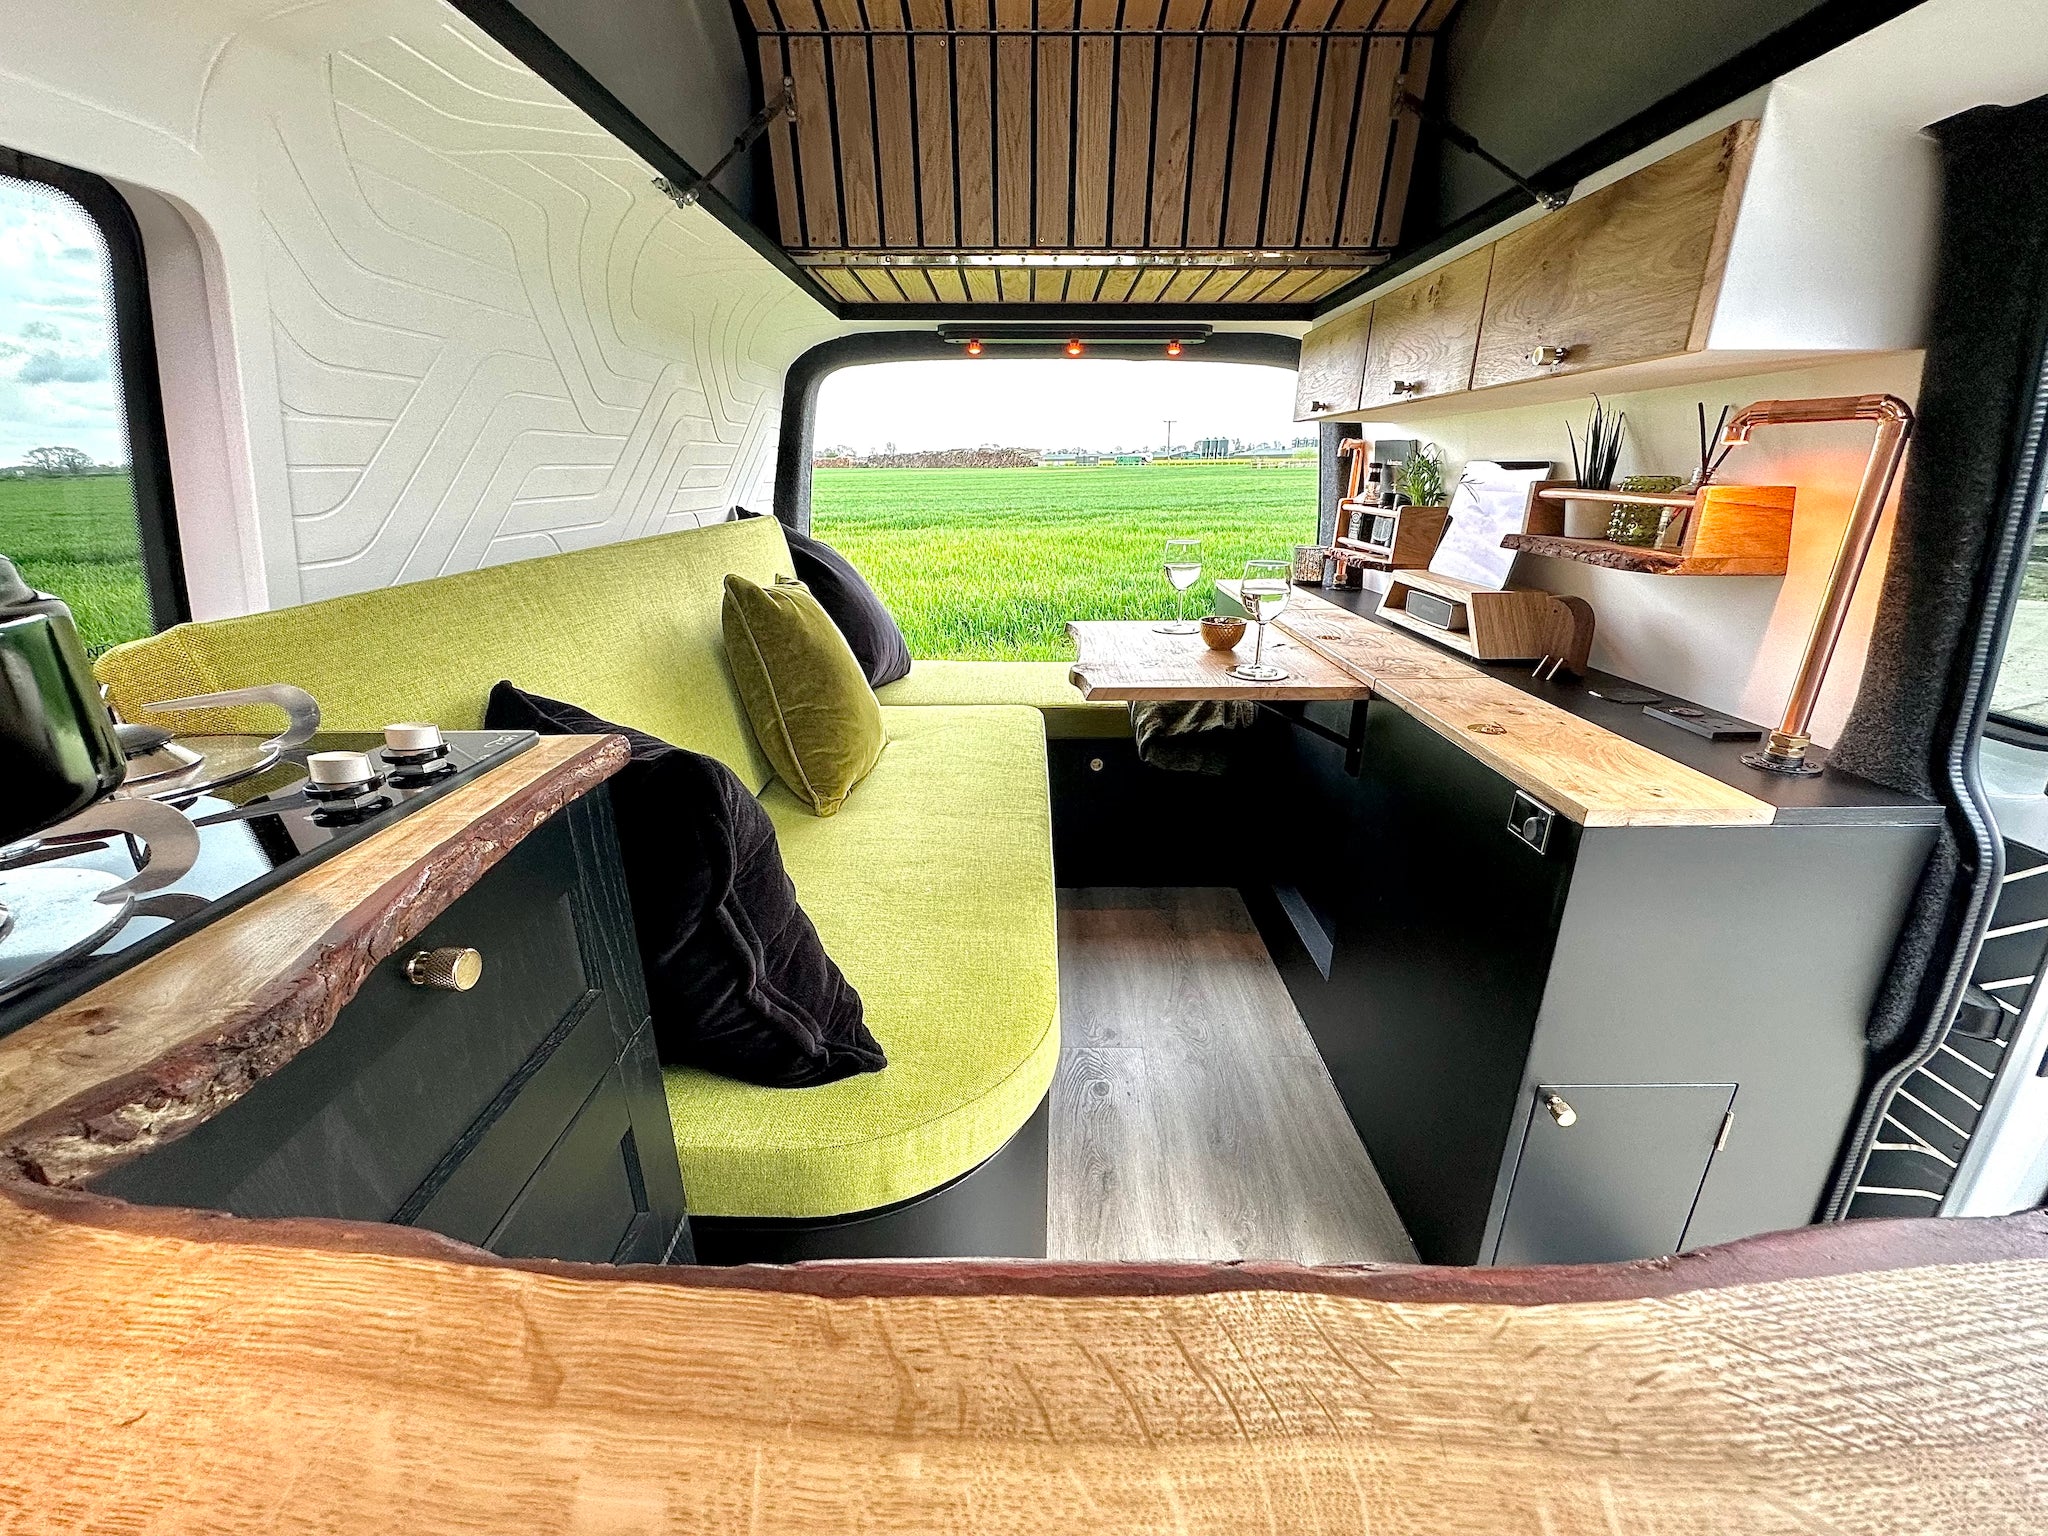 Brown Bird & Co - Campervan Conversions, Omnia Oven UK Shop